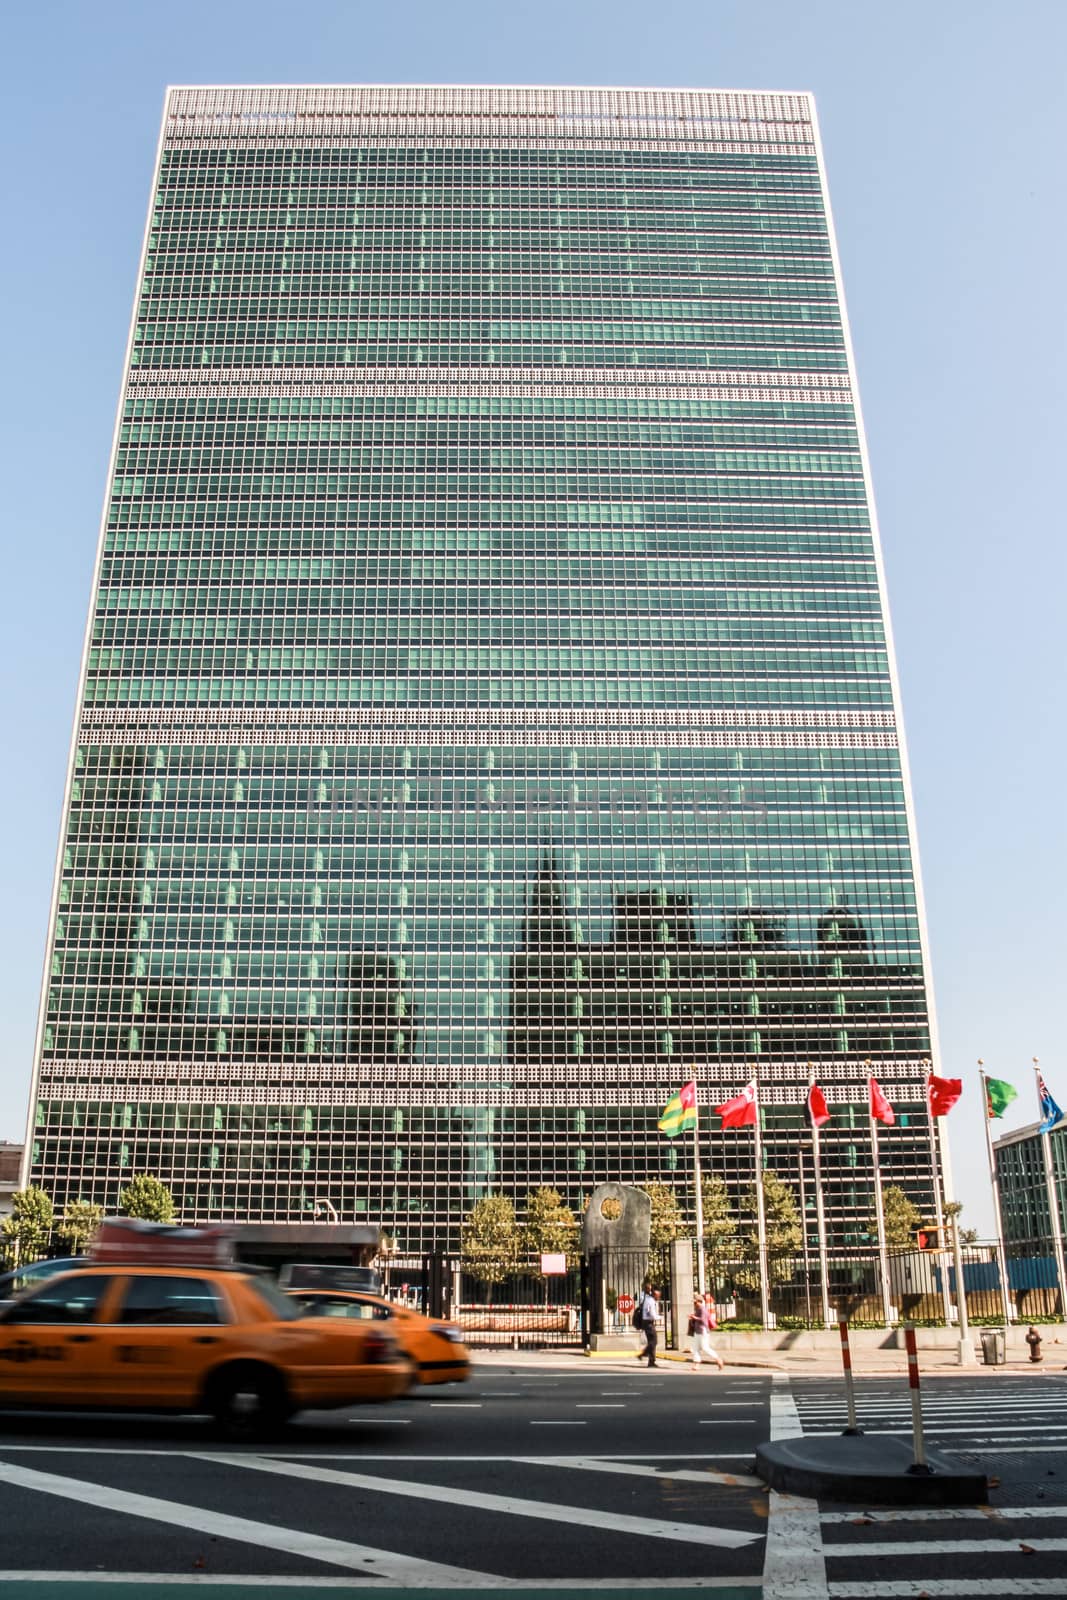 NEW YORK CITY, NEW YORK - SEPTEMBER 4: United Nations Headquarter, in New York City, NY, on September 4, 2013. 